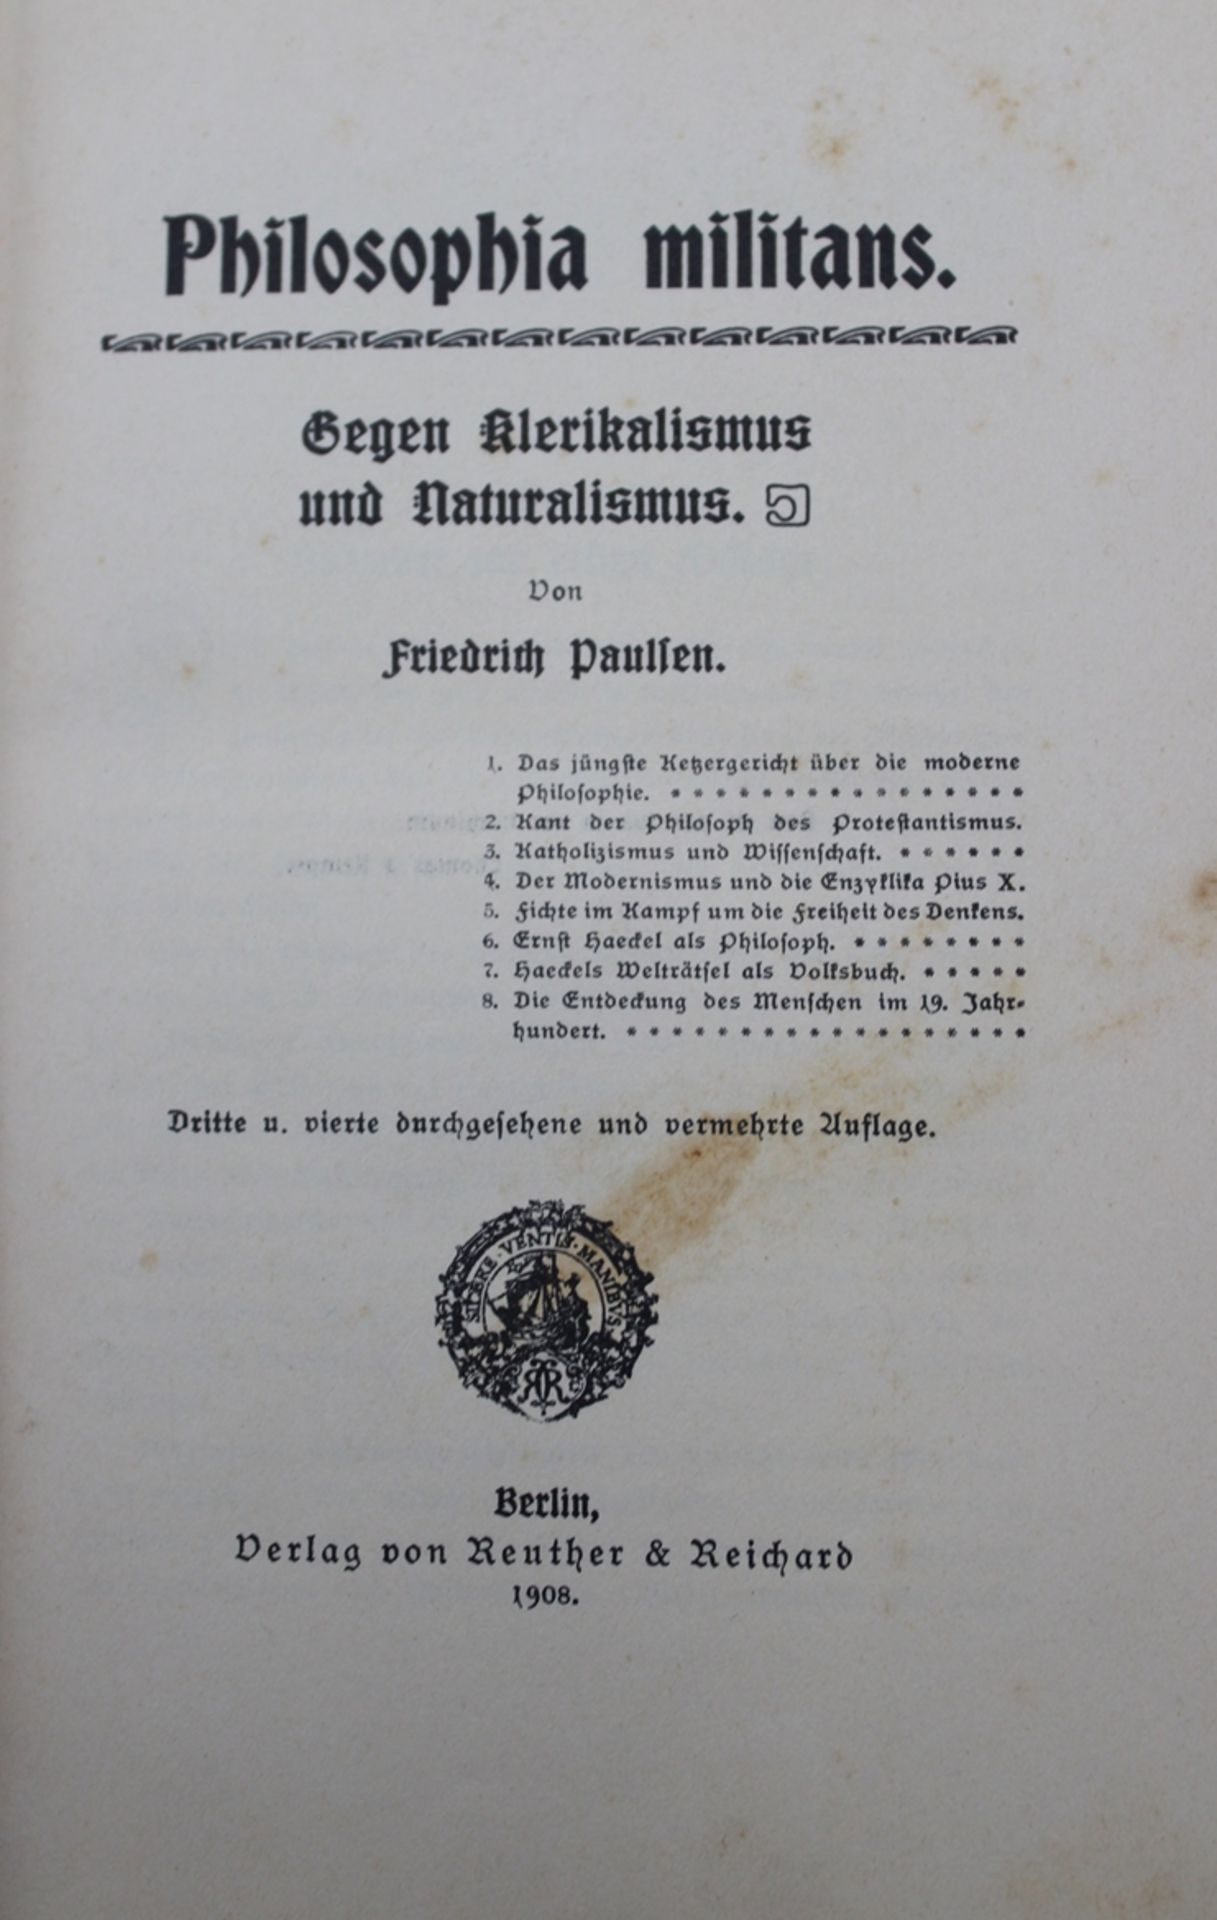 Friedrich Paulesen, Philosophia militans - Gegen Klerikalismus und Neutralismus, Berlin 1908 - Image 2 of 4